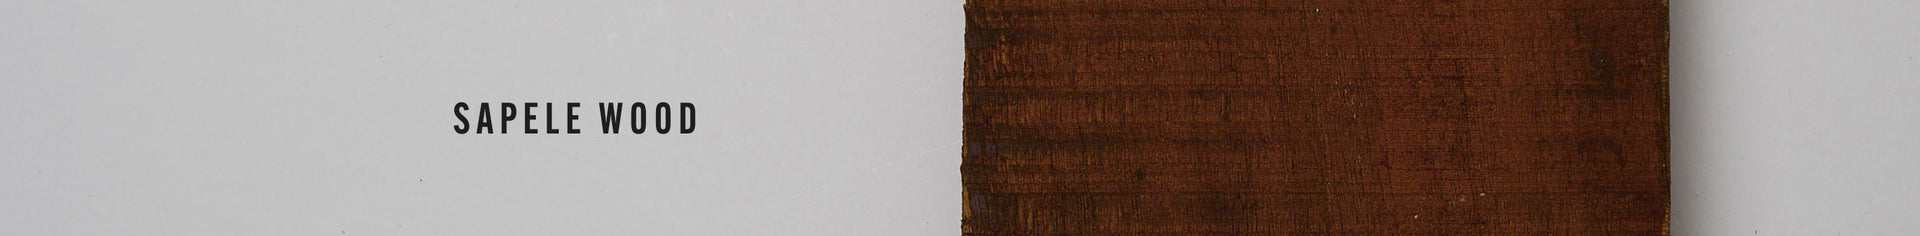 Kollektion aus Sapeli-Holz